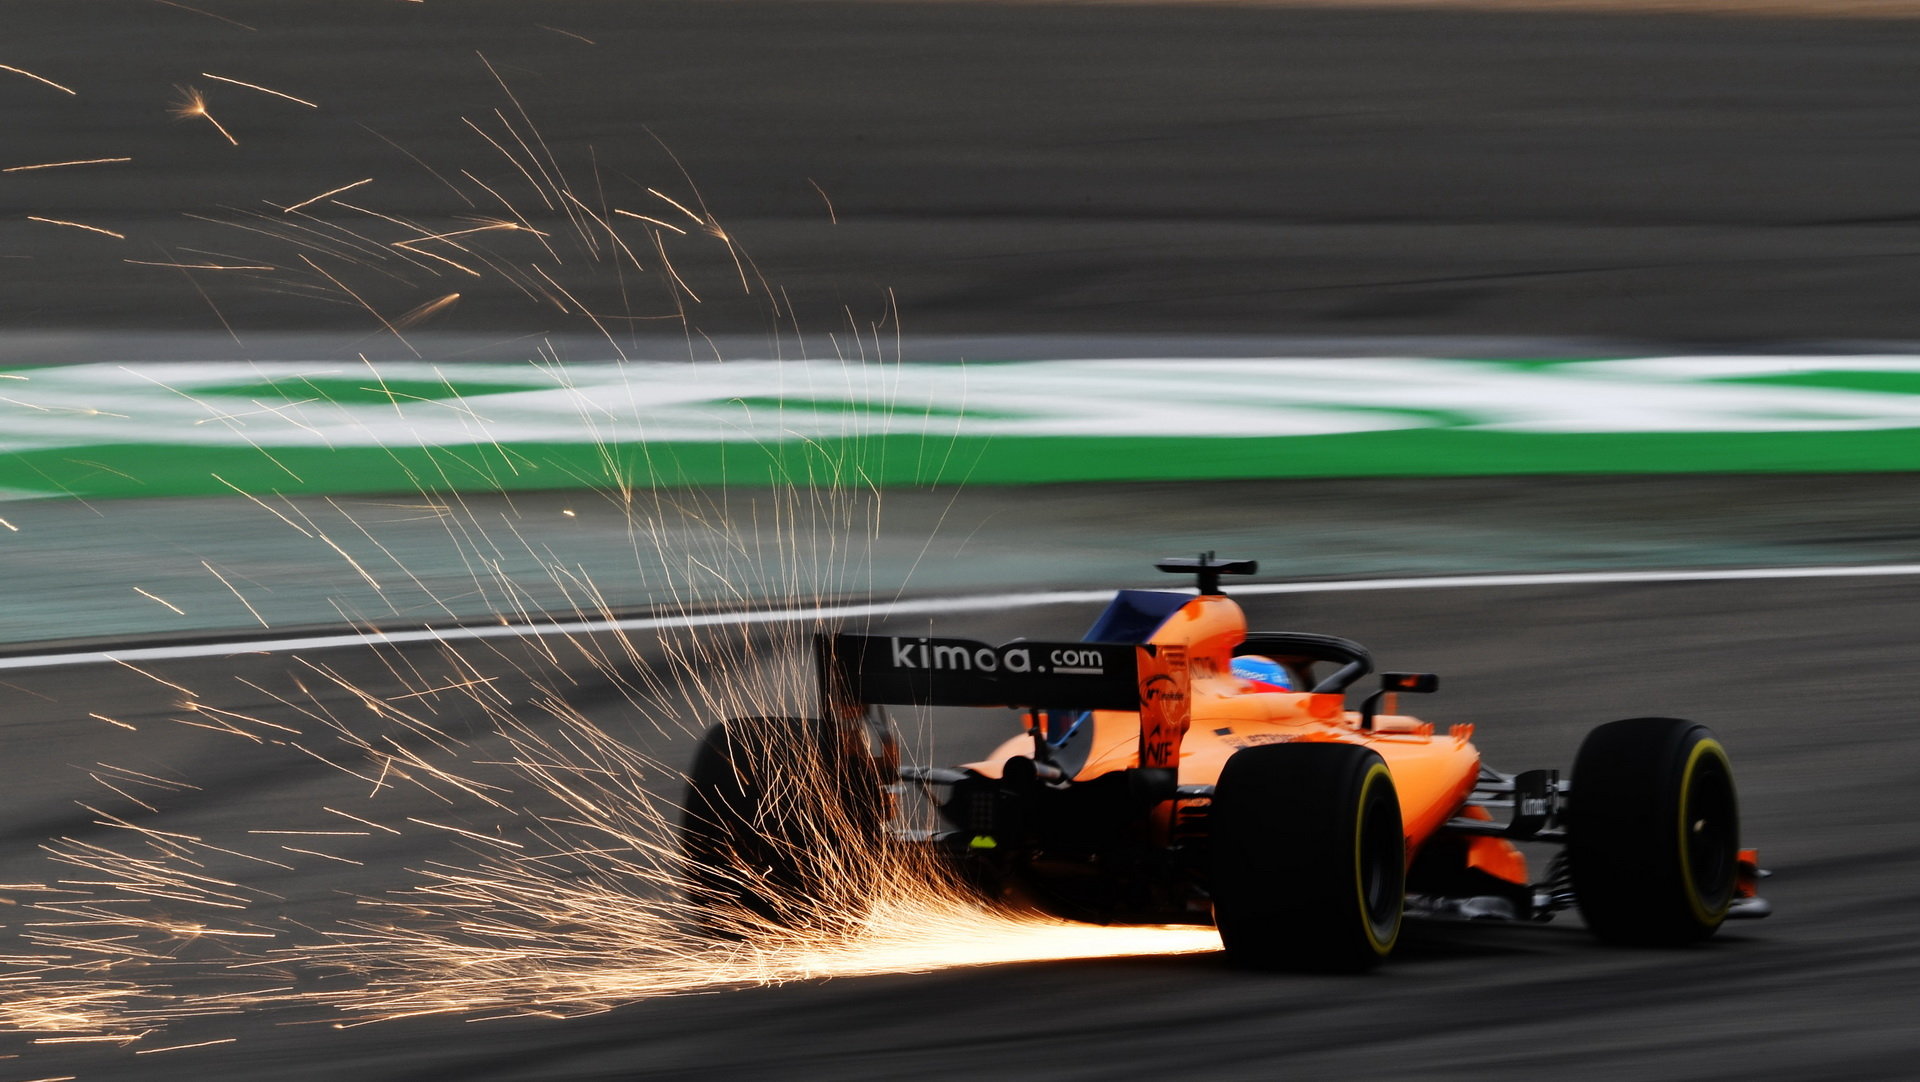 Fernando Alonso jiskřil v tréninku v Číně